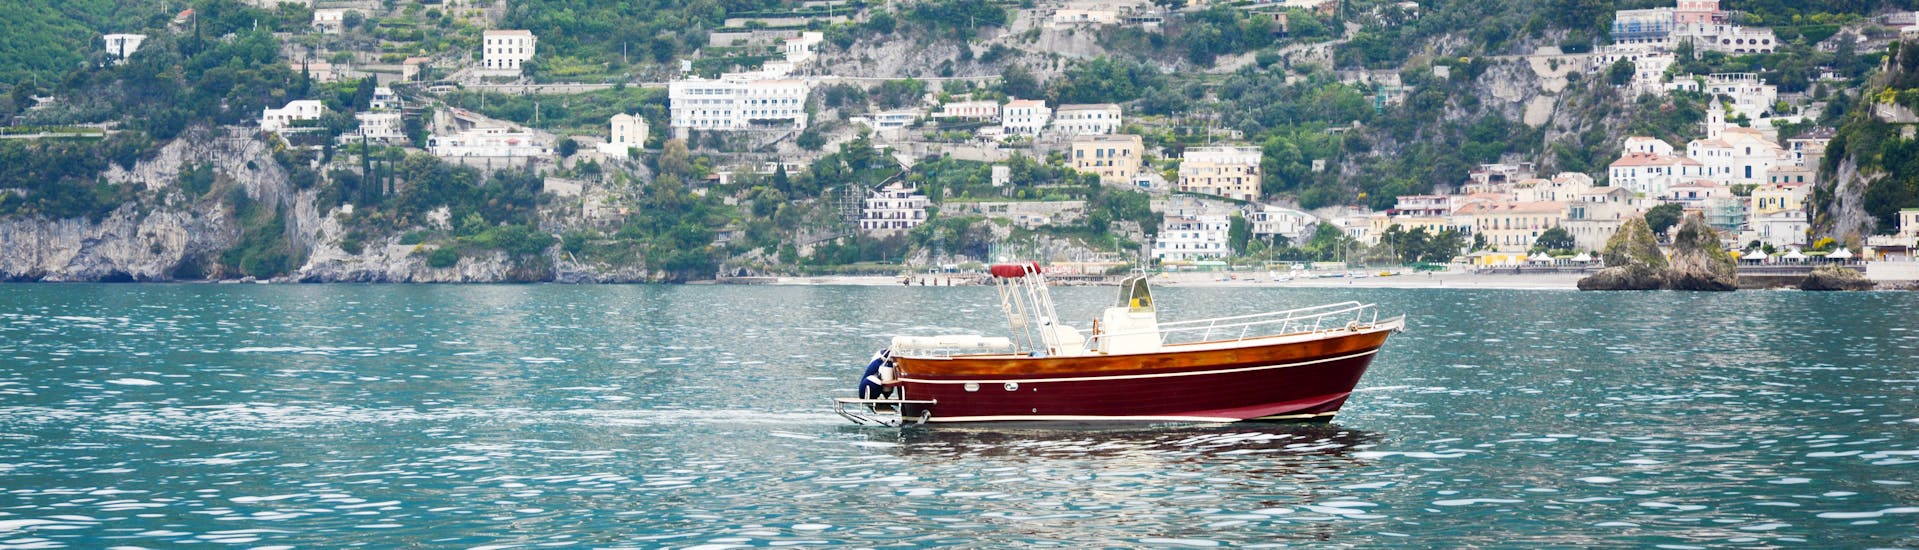 Das Boot von Blu Mediterraneo Amalfiküste während der Bootstour von Salerno entlang der Amalfiküste.